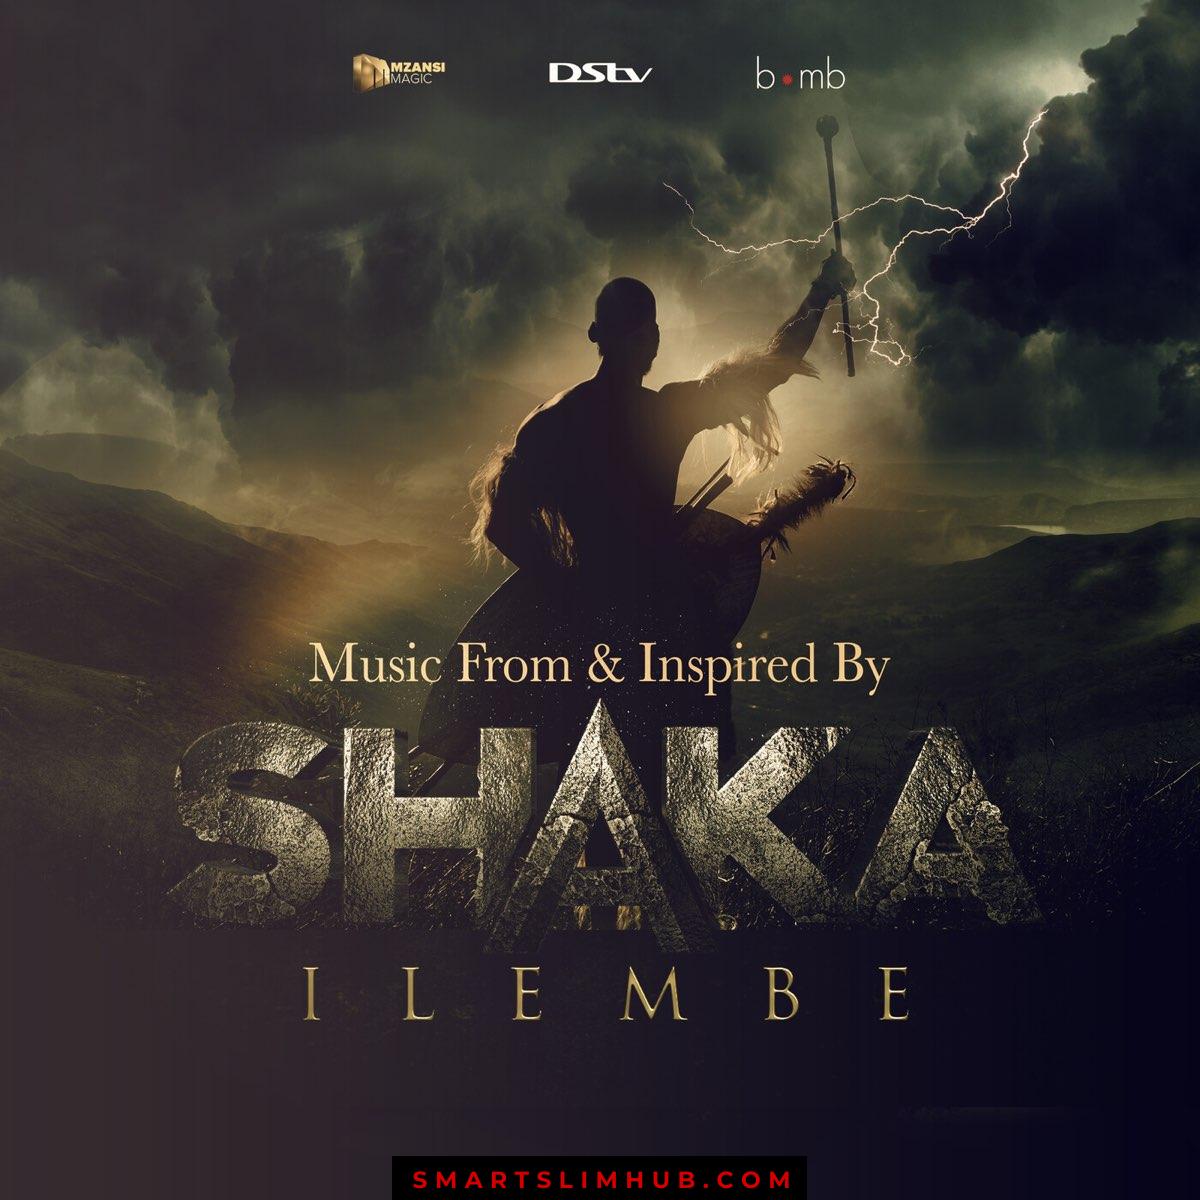 Shaka iLembe – Music From & Inspired By Shaka iLembe (Original Soundtrack album